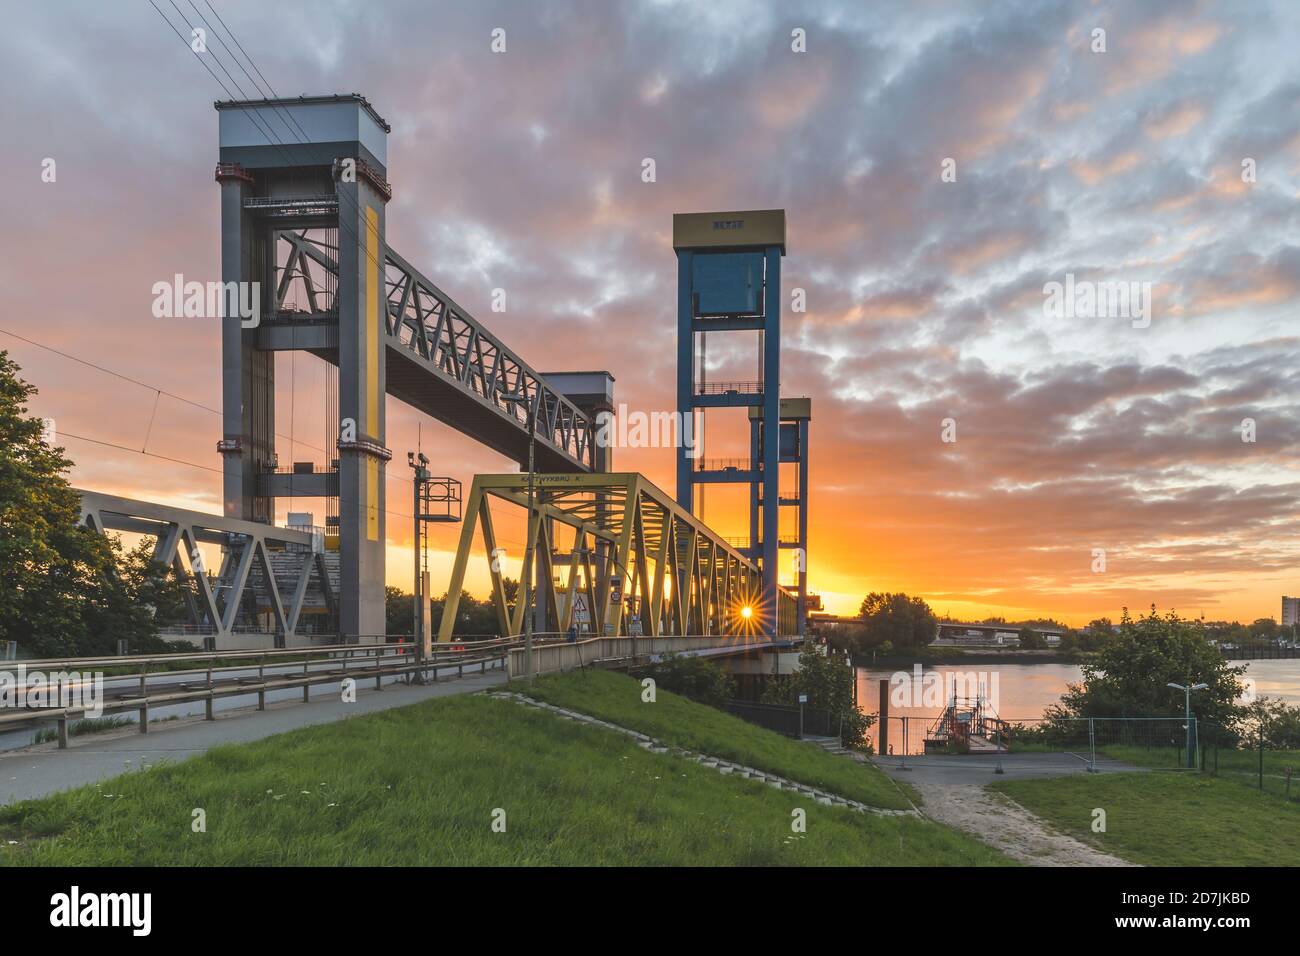 Allemagne, Hambourg, pont de Kattwyk au lever du soleil Banque D'Images